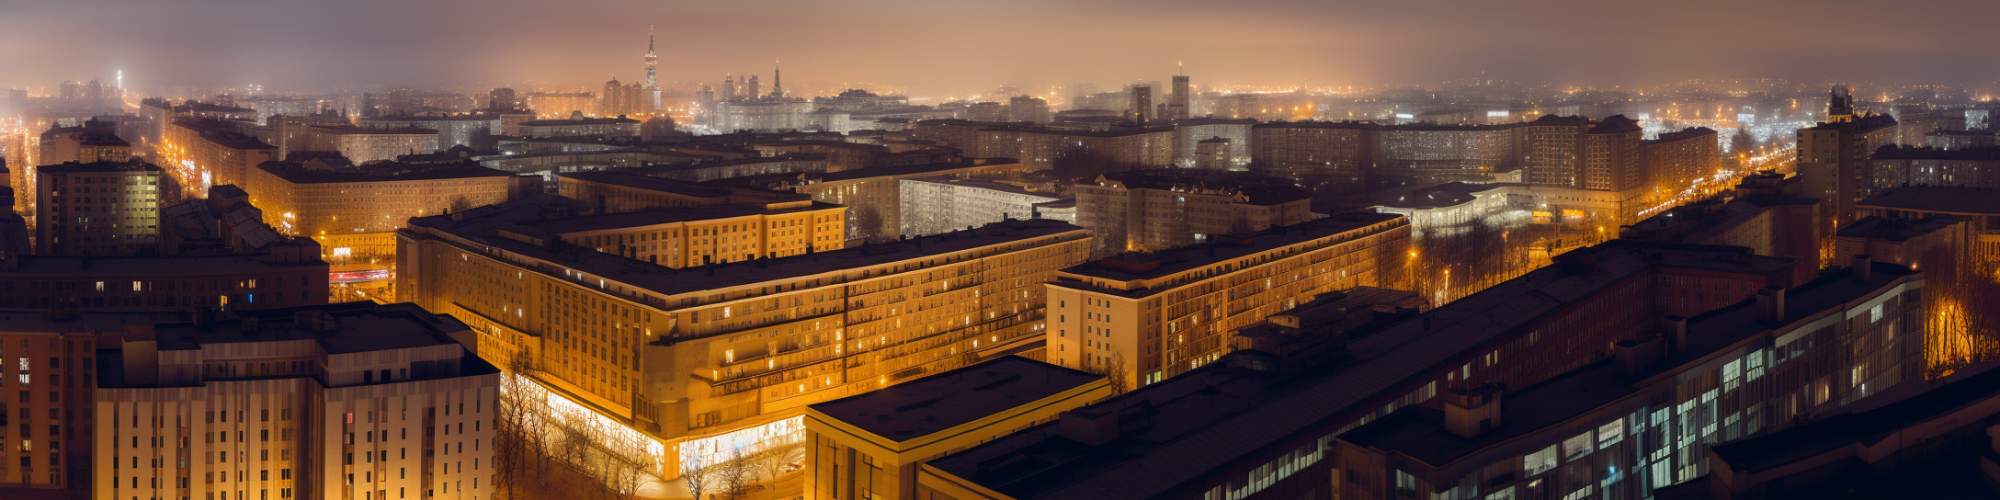 Панорама с московскими панельками